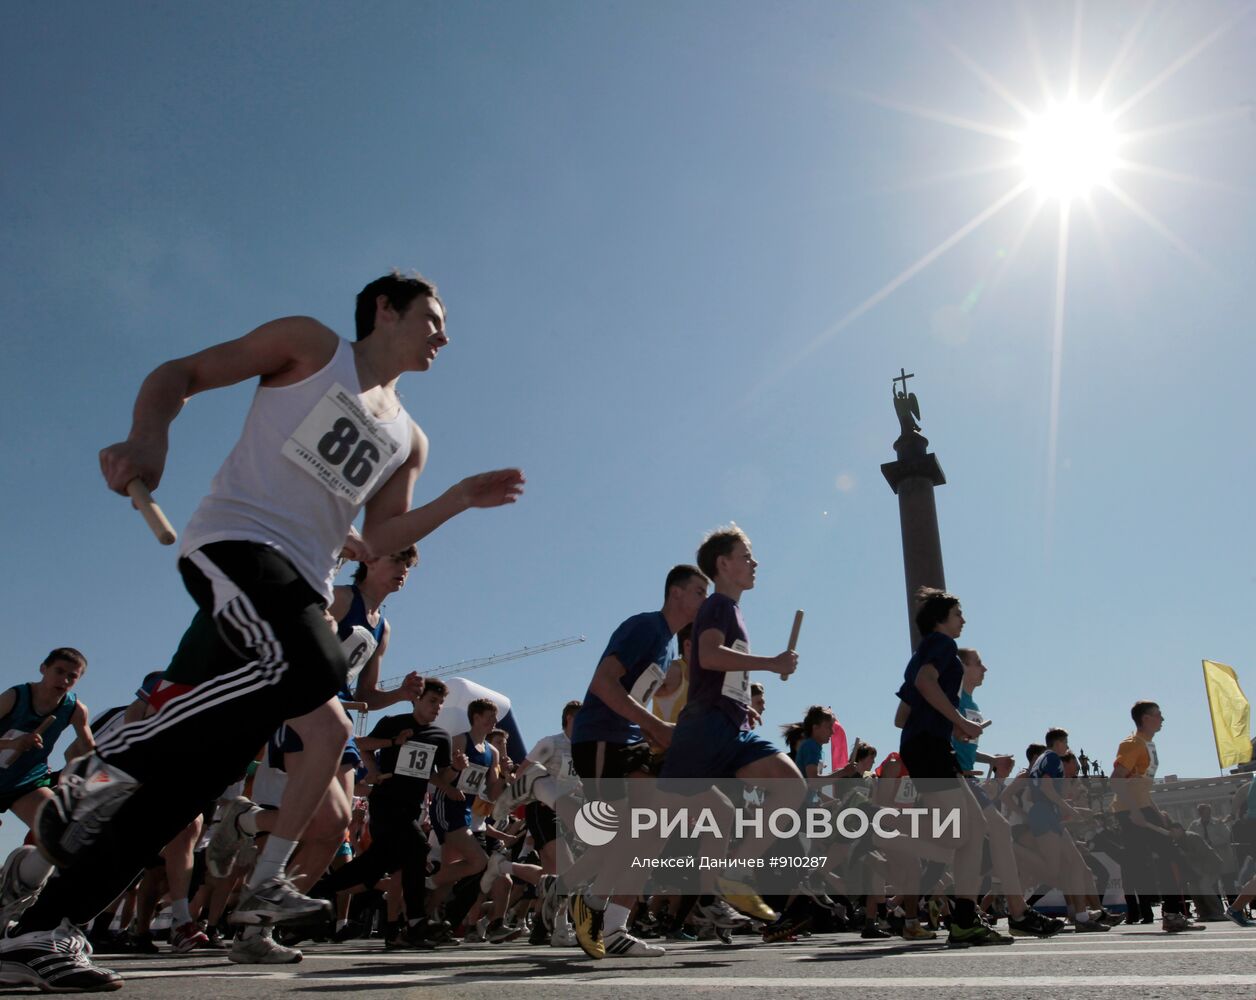 Празднование "1000 дней до Олимпиады 2014" в Санкт-Петербурге